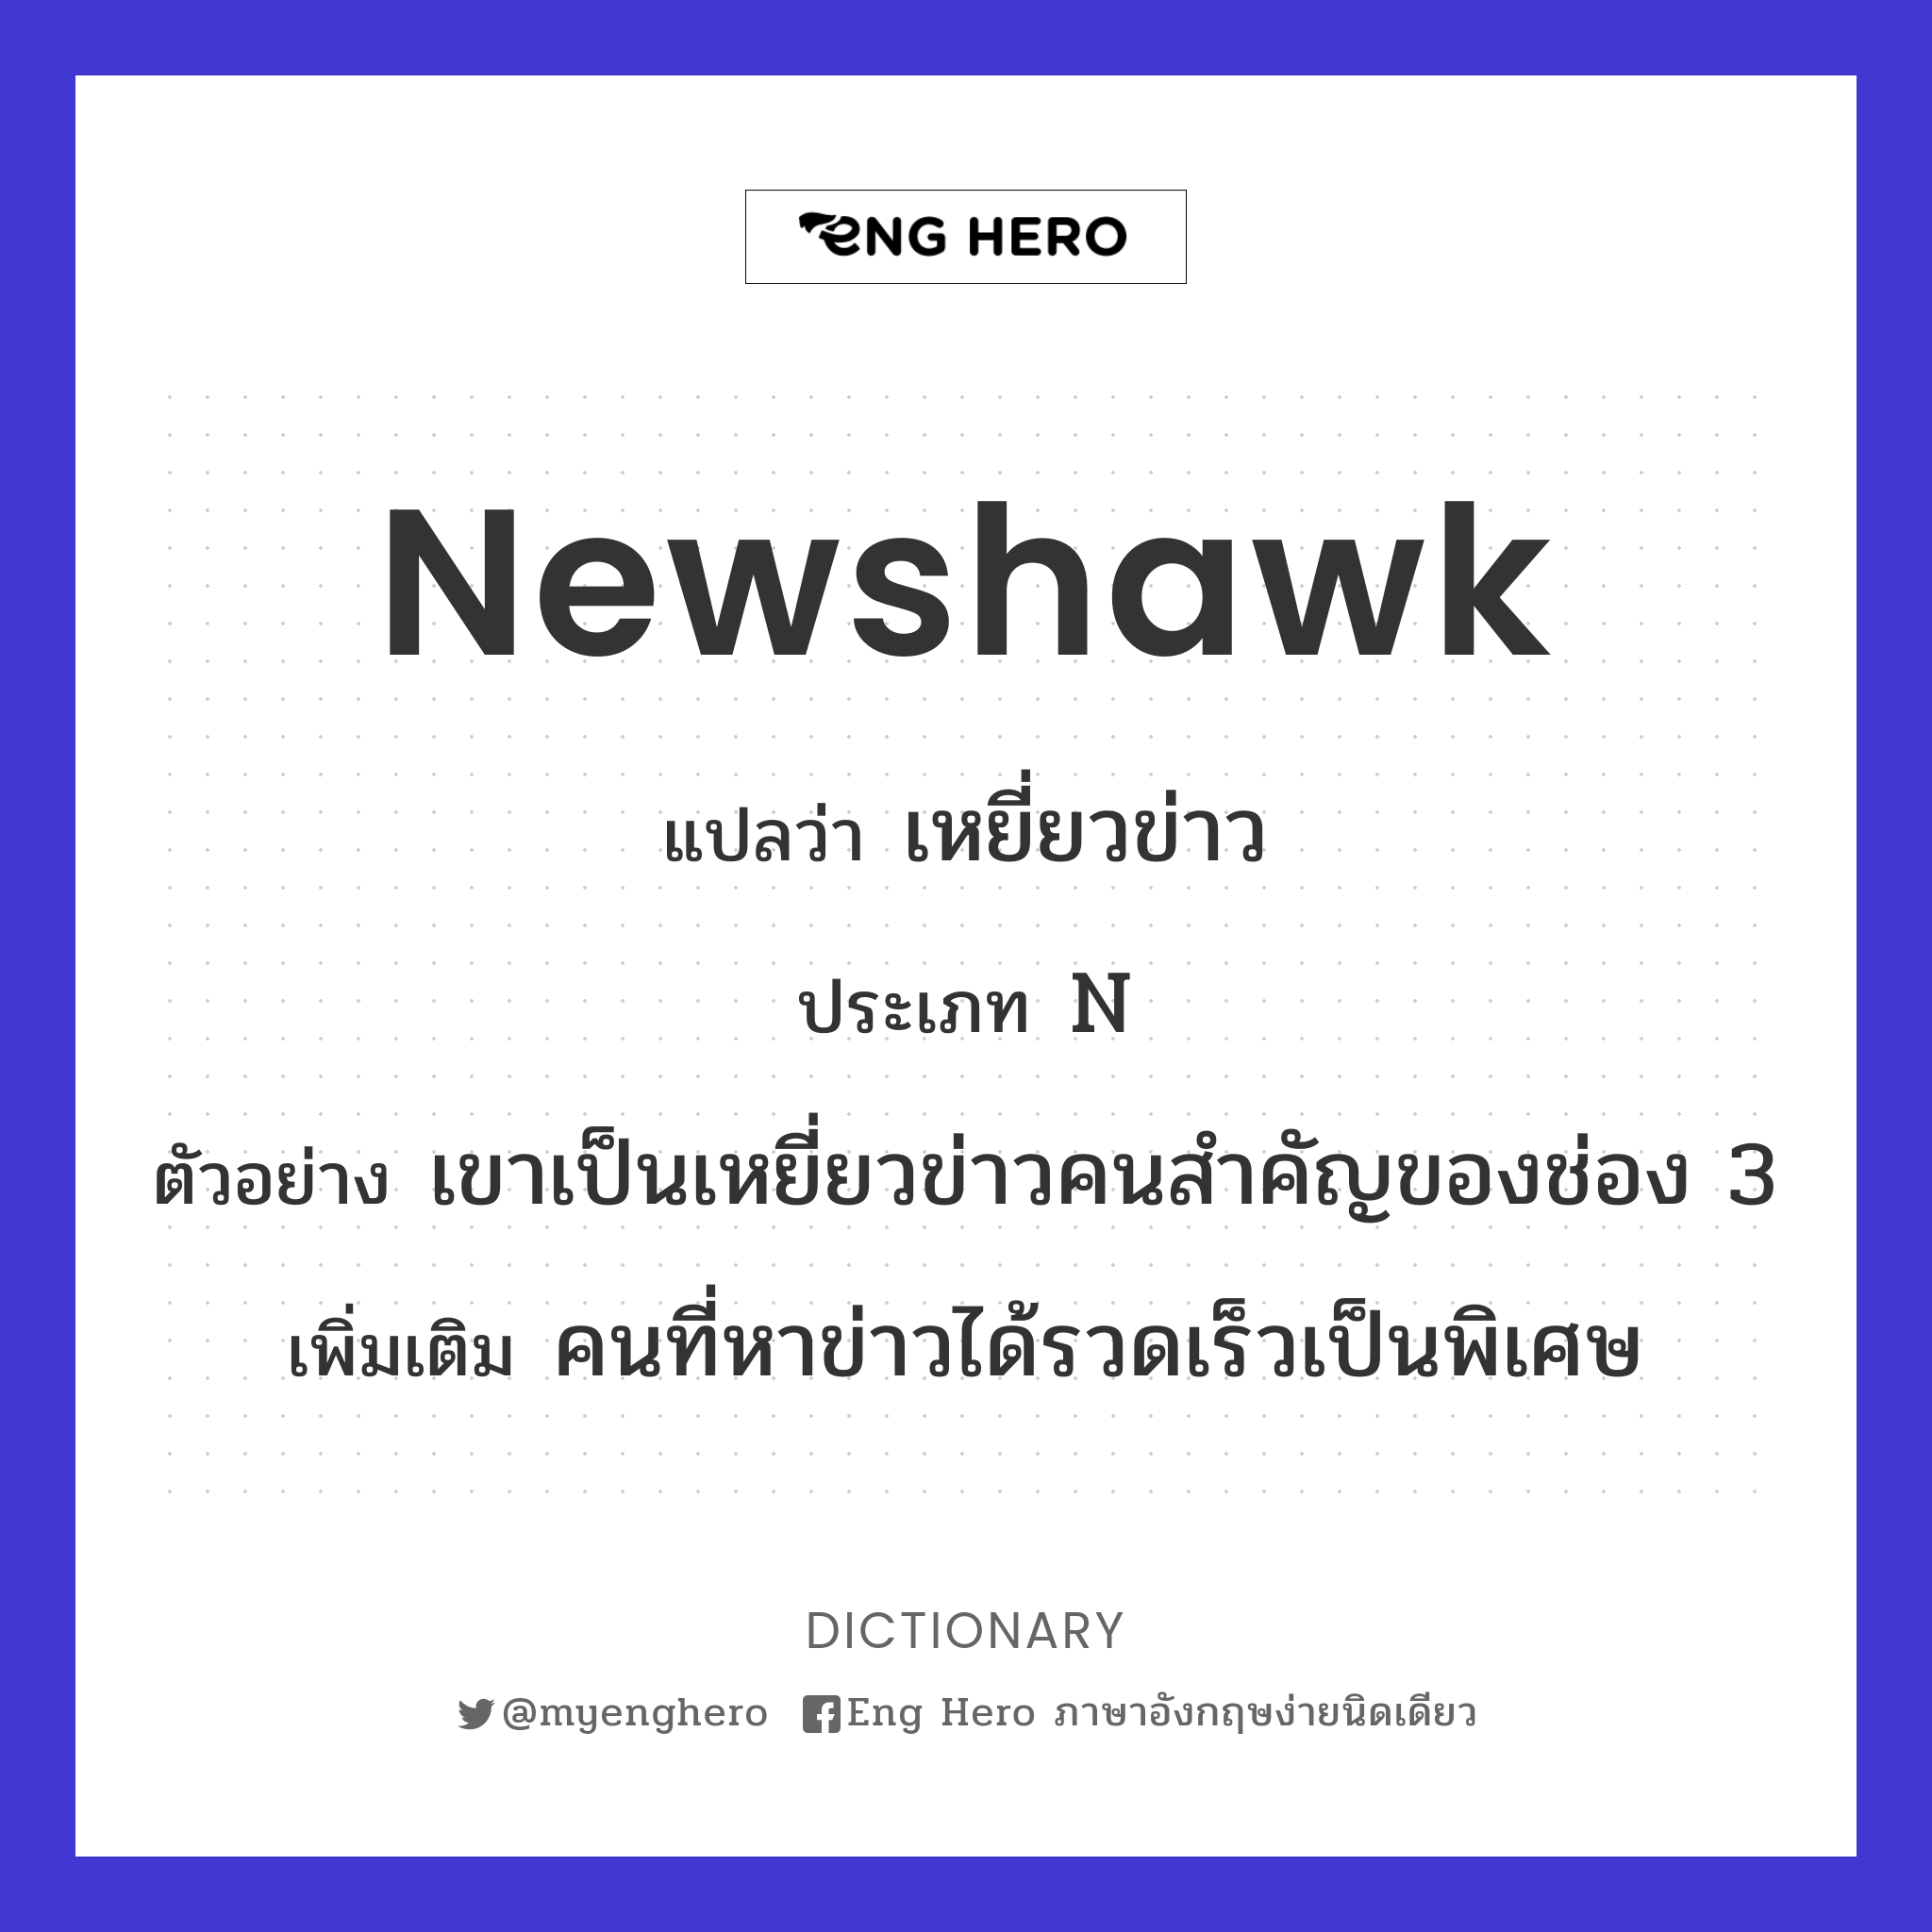 newshawk